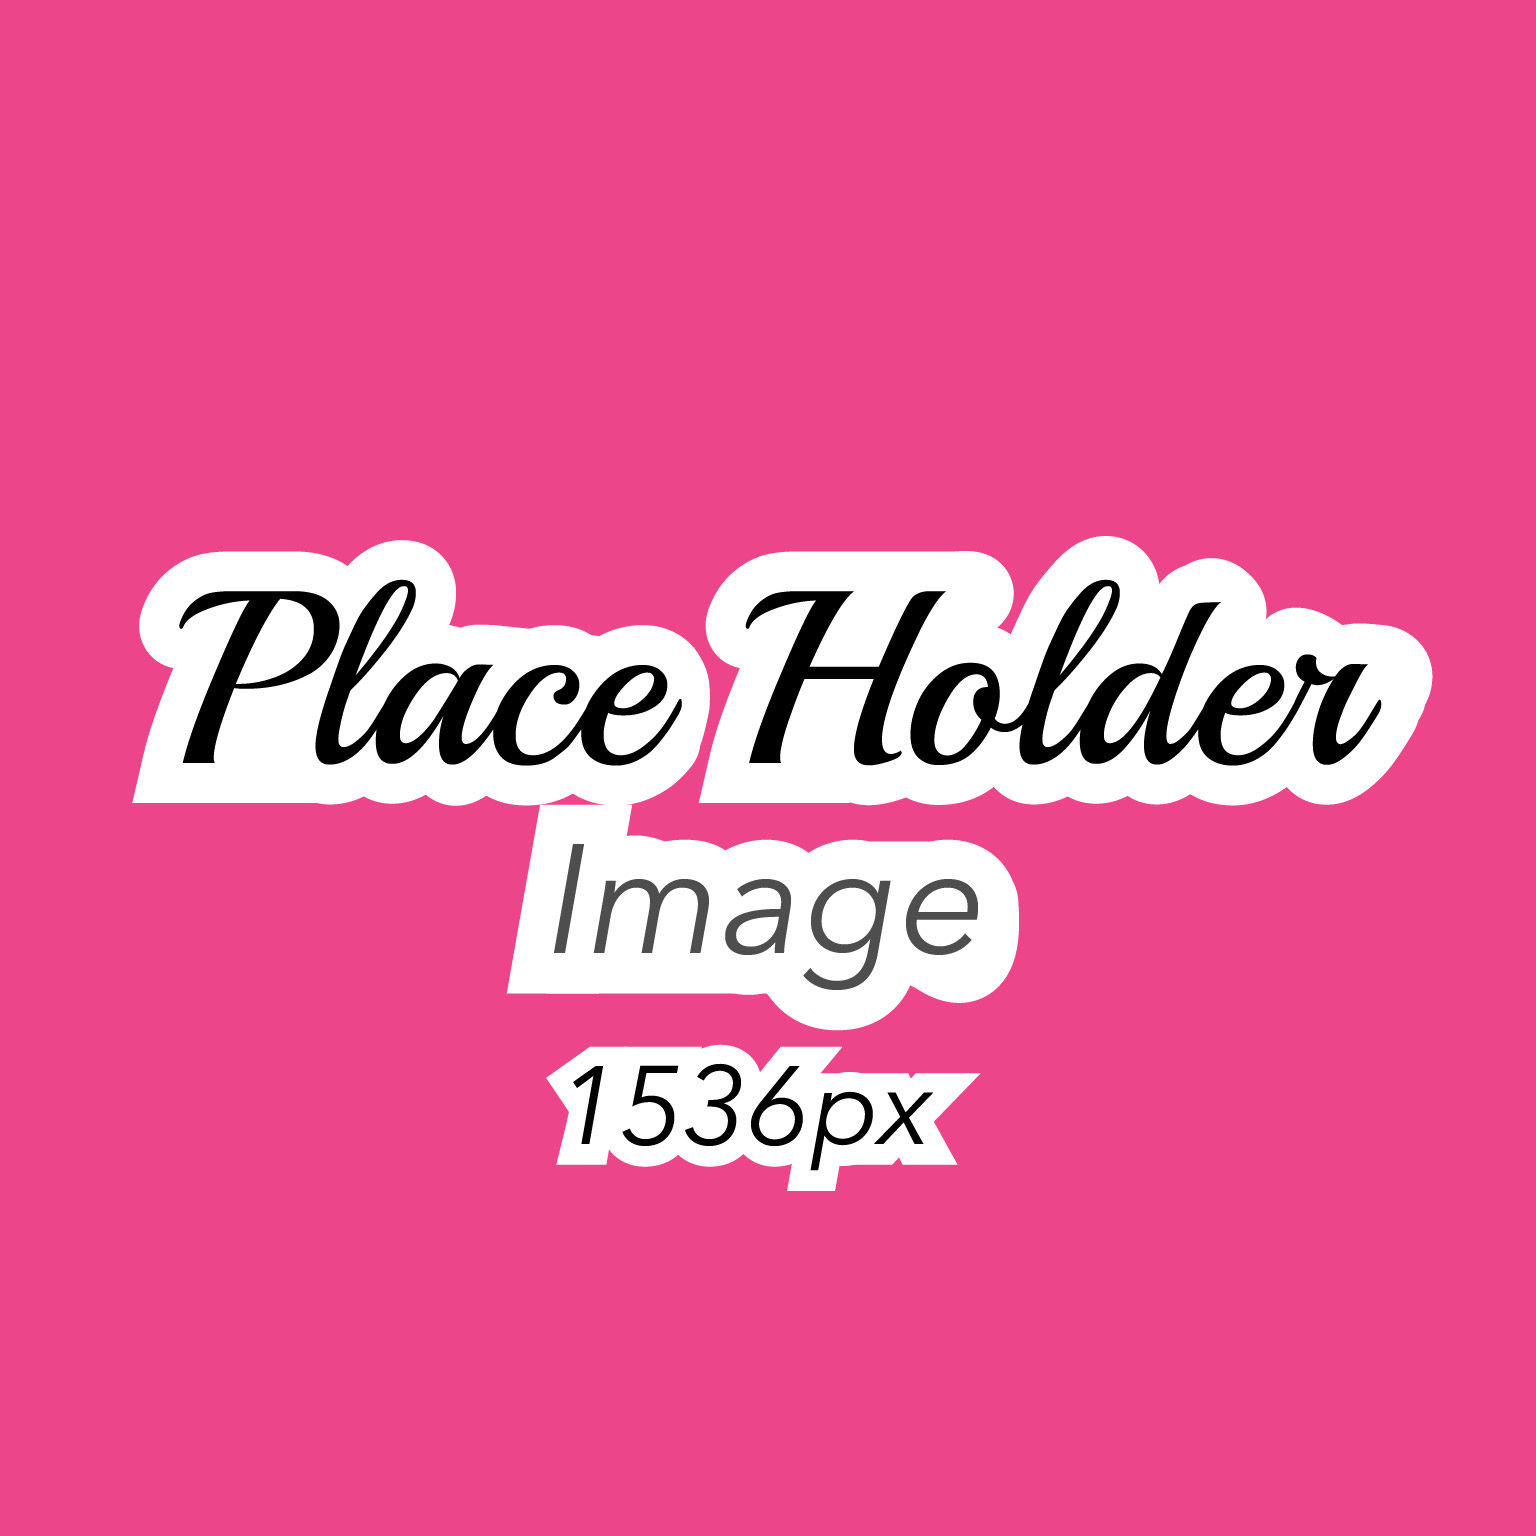 Size Comparison_Image Place Holder 1536